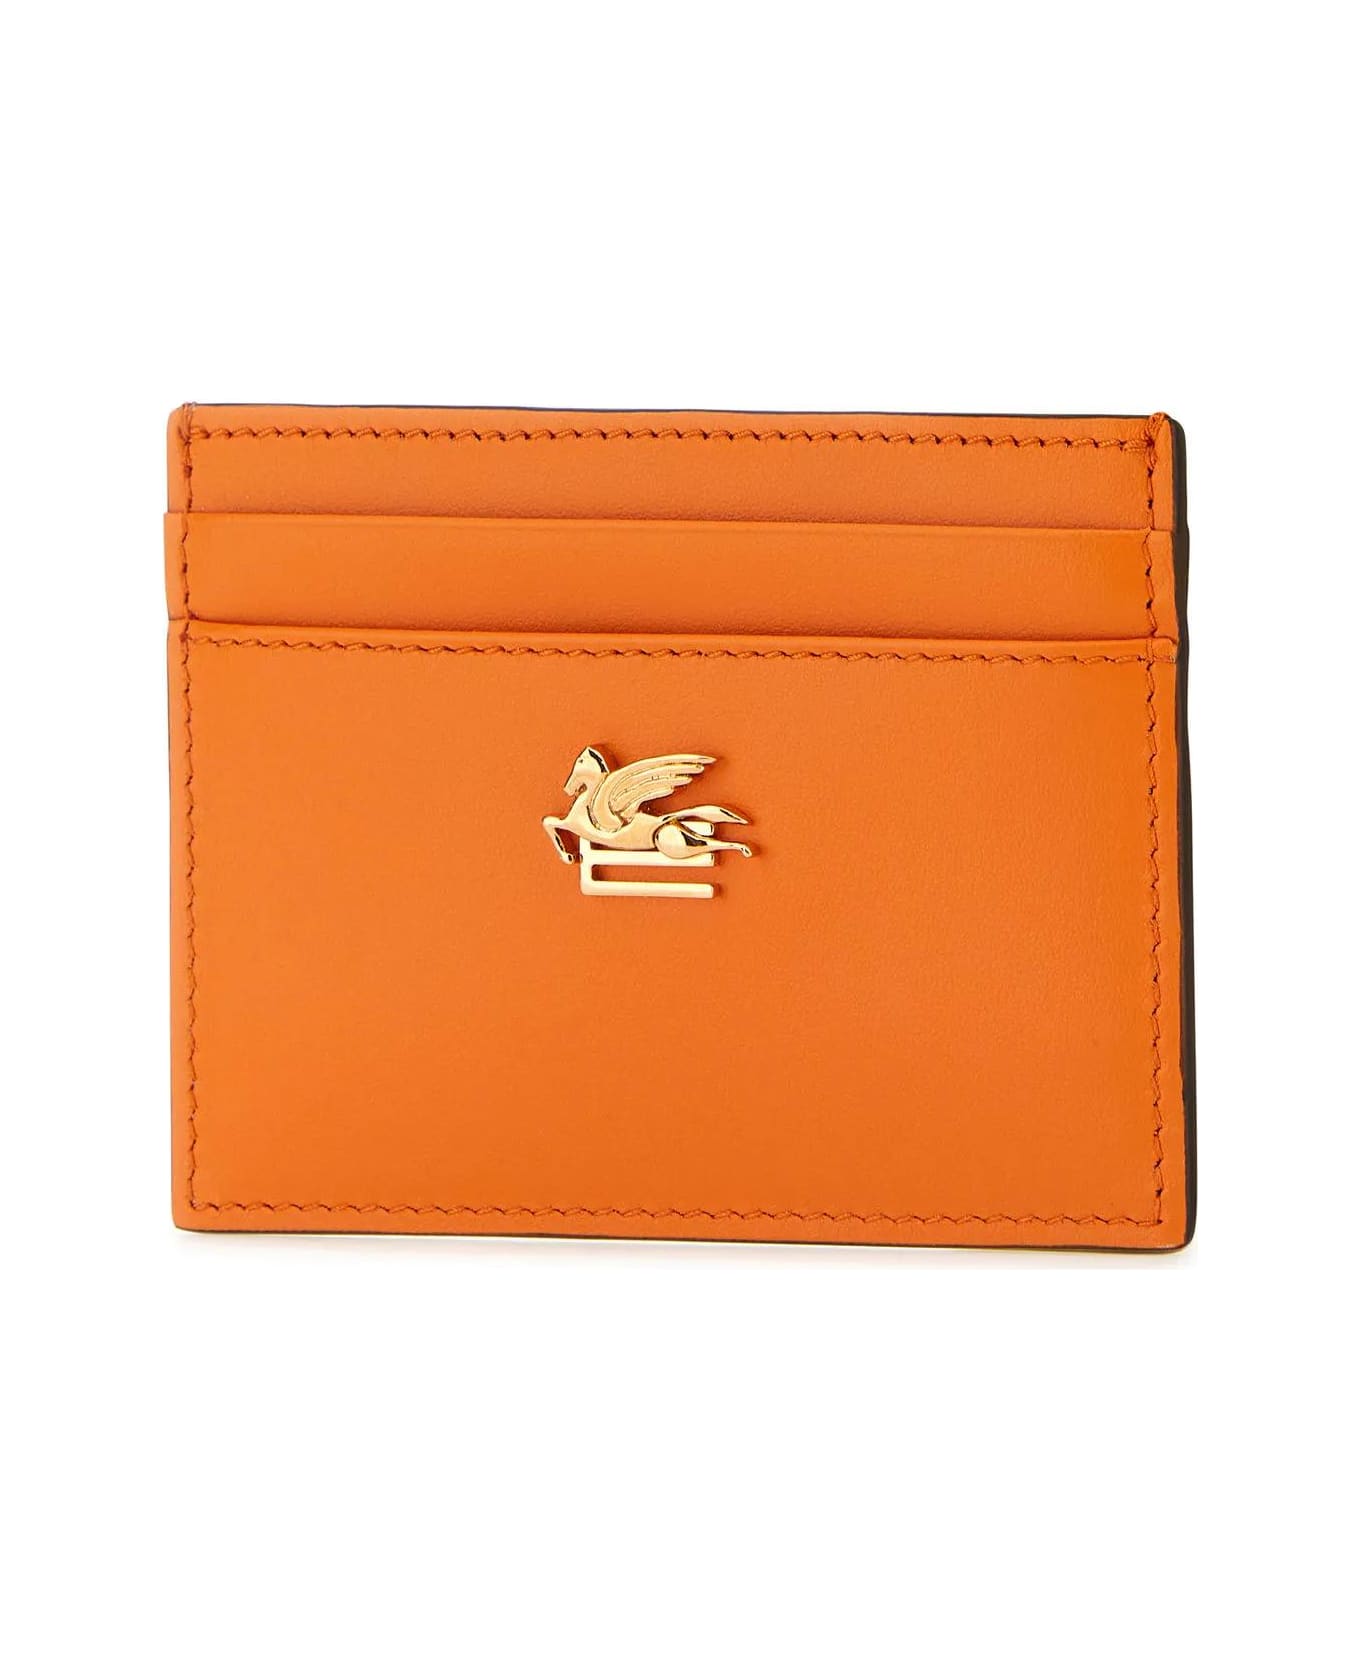 Etro Orange Leather Cardholder - Orange 財布